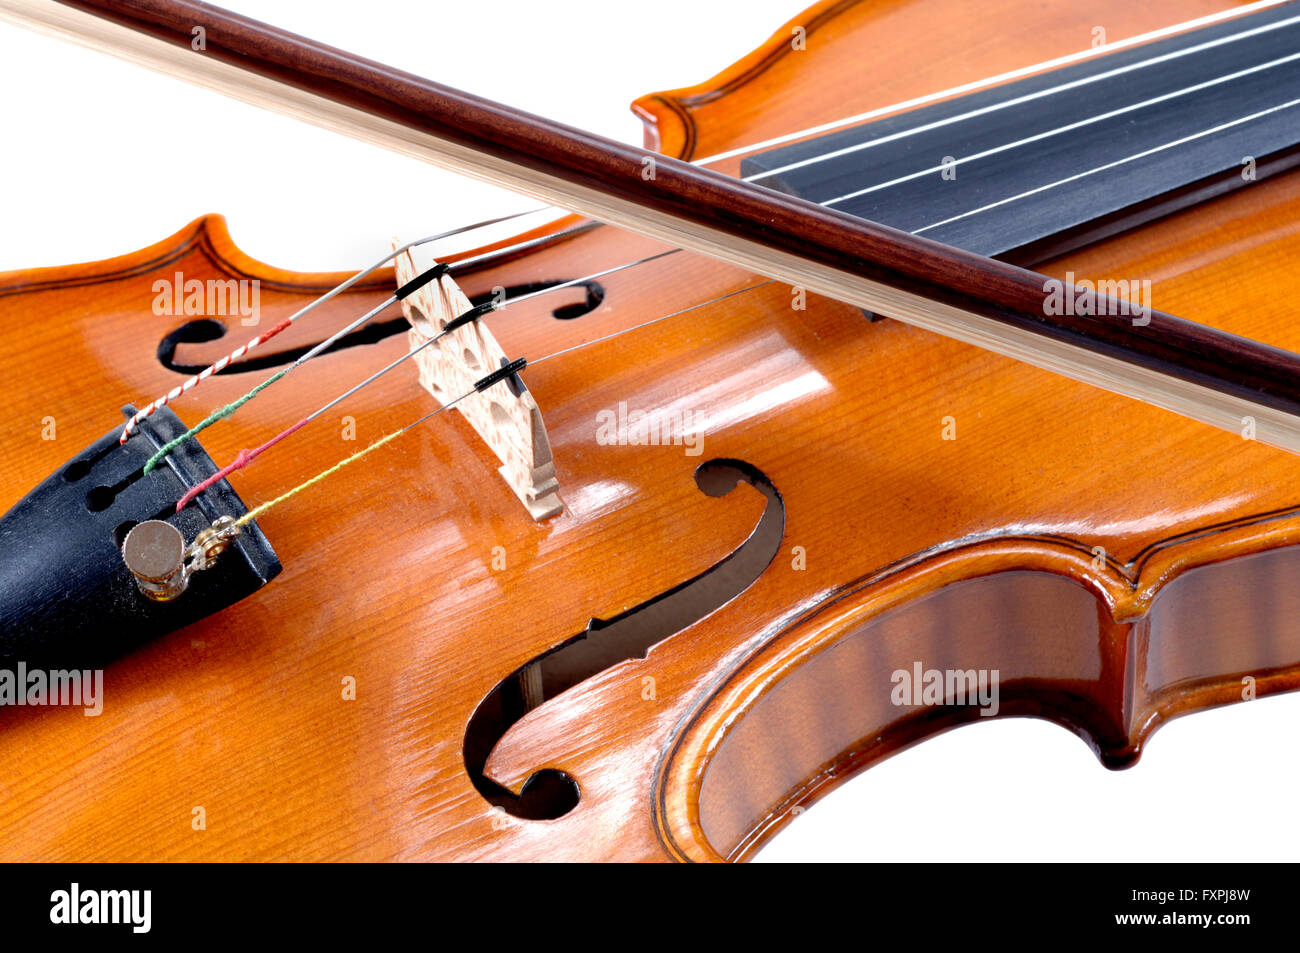 Dettaglio del violino come strumento musicale della orchestra Foto Stock